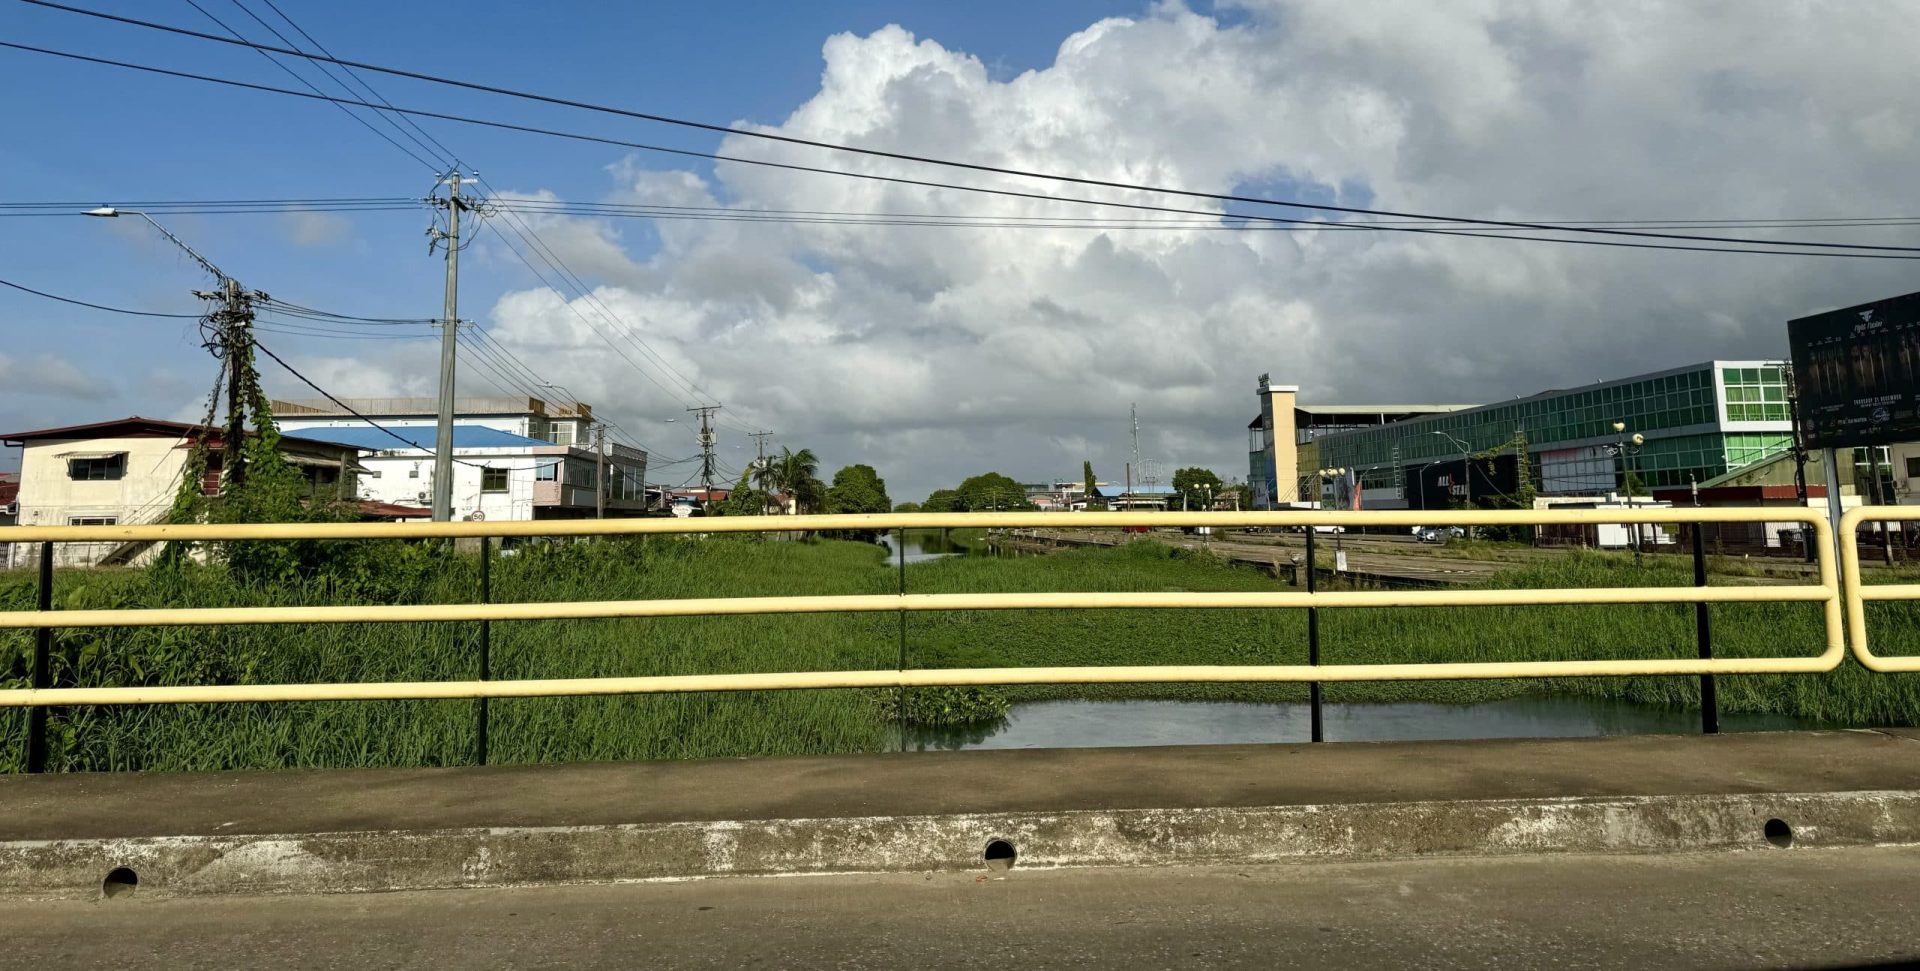 Lange tijd wonen in Nederland maakt het lastig terug te keren naar Suriname